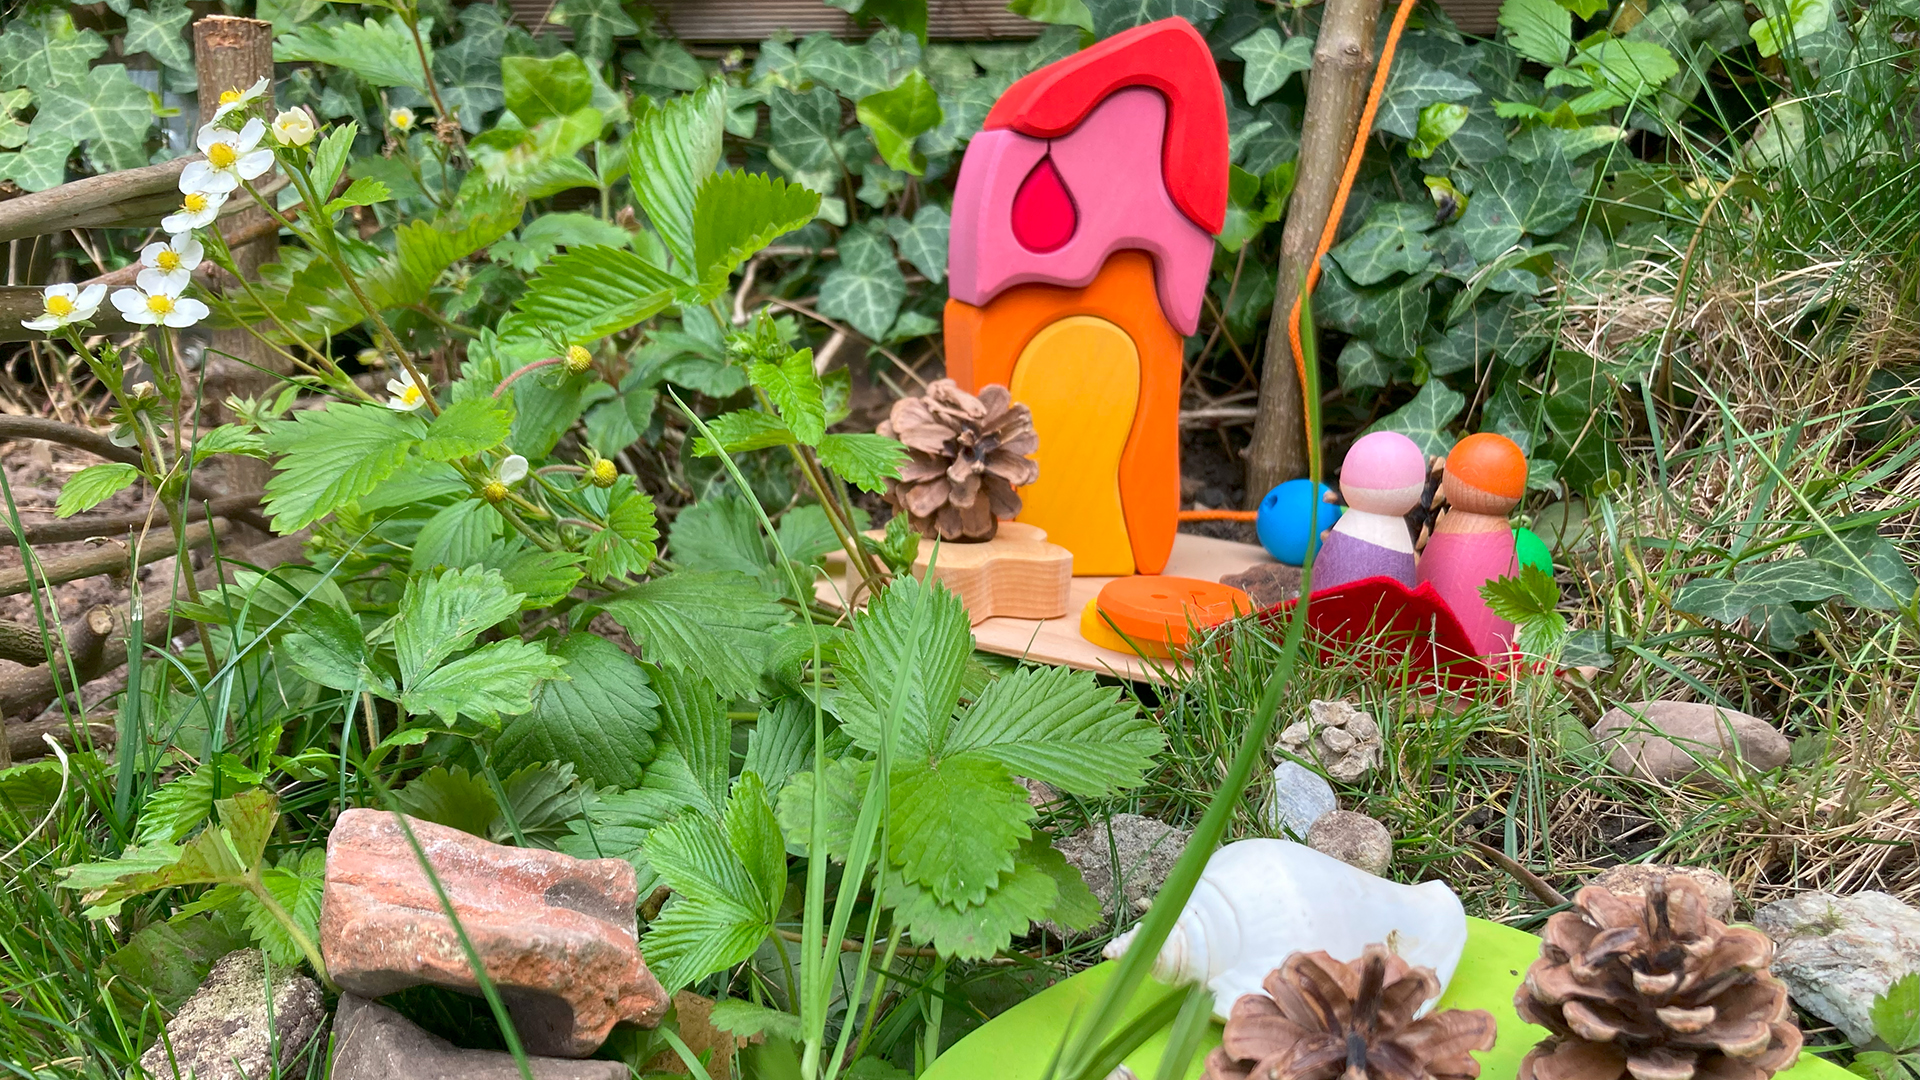 Ein kleines Spielhäuschen aus Holz steht im Gras und ist mit Naturmaterialien geschmückt.